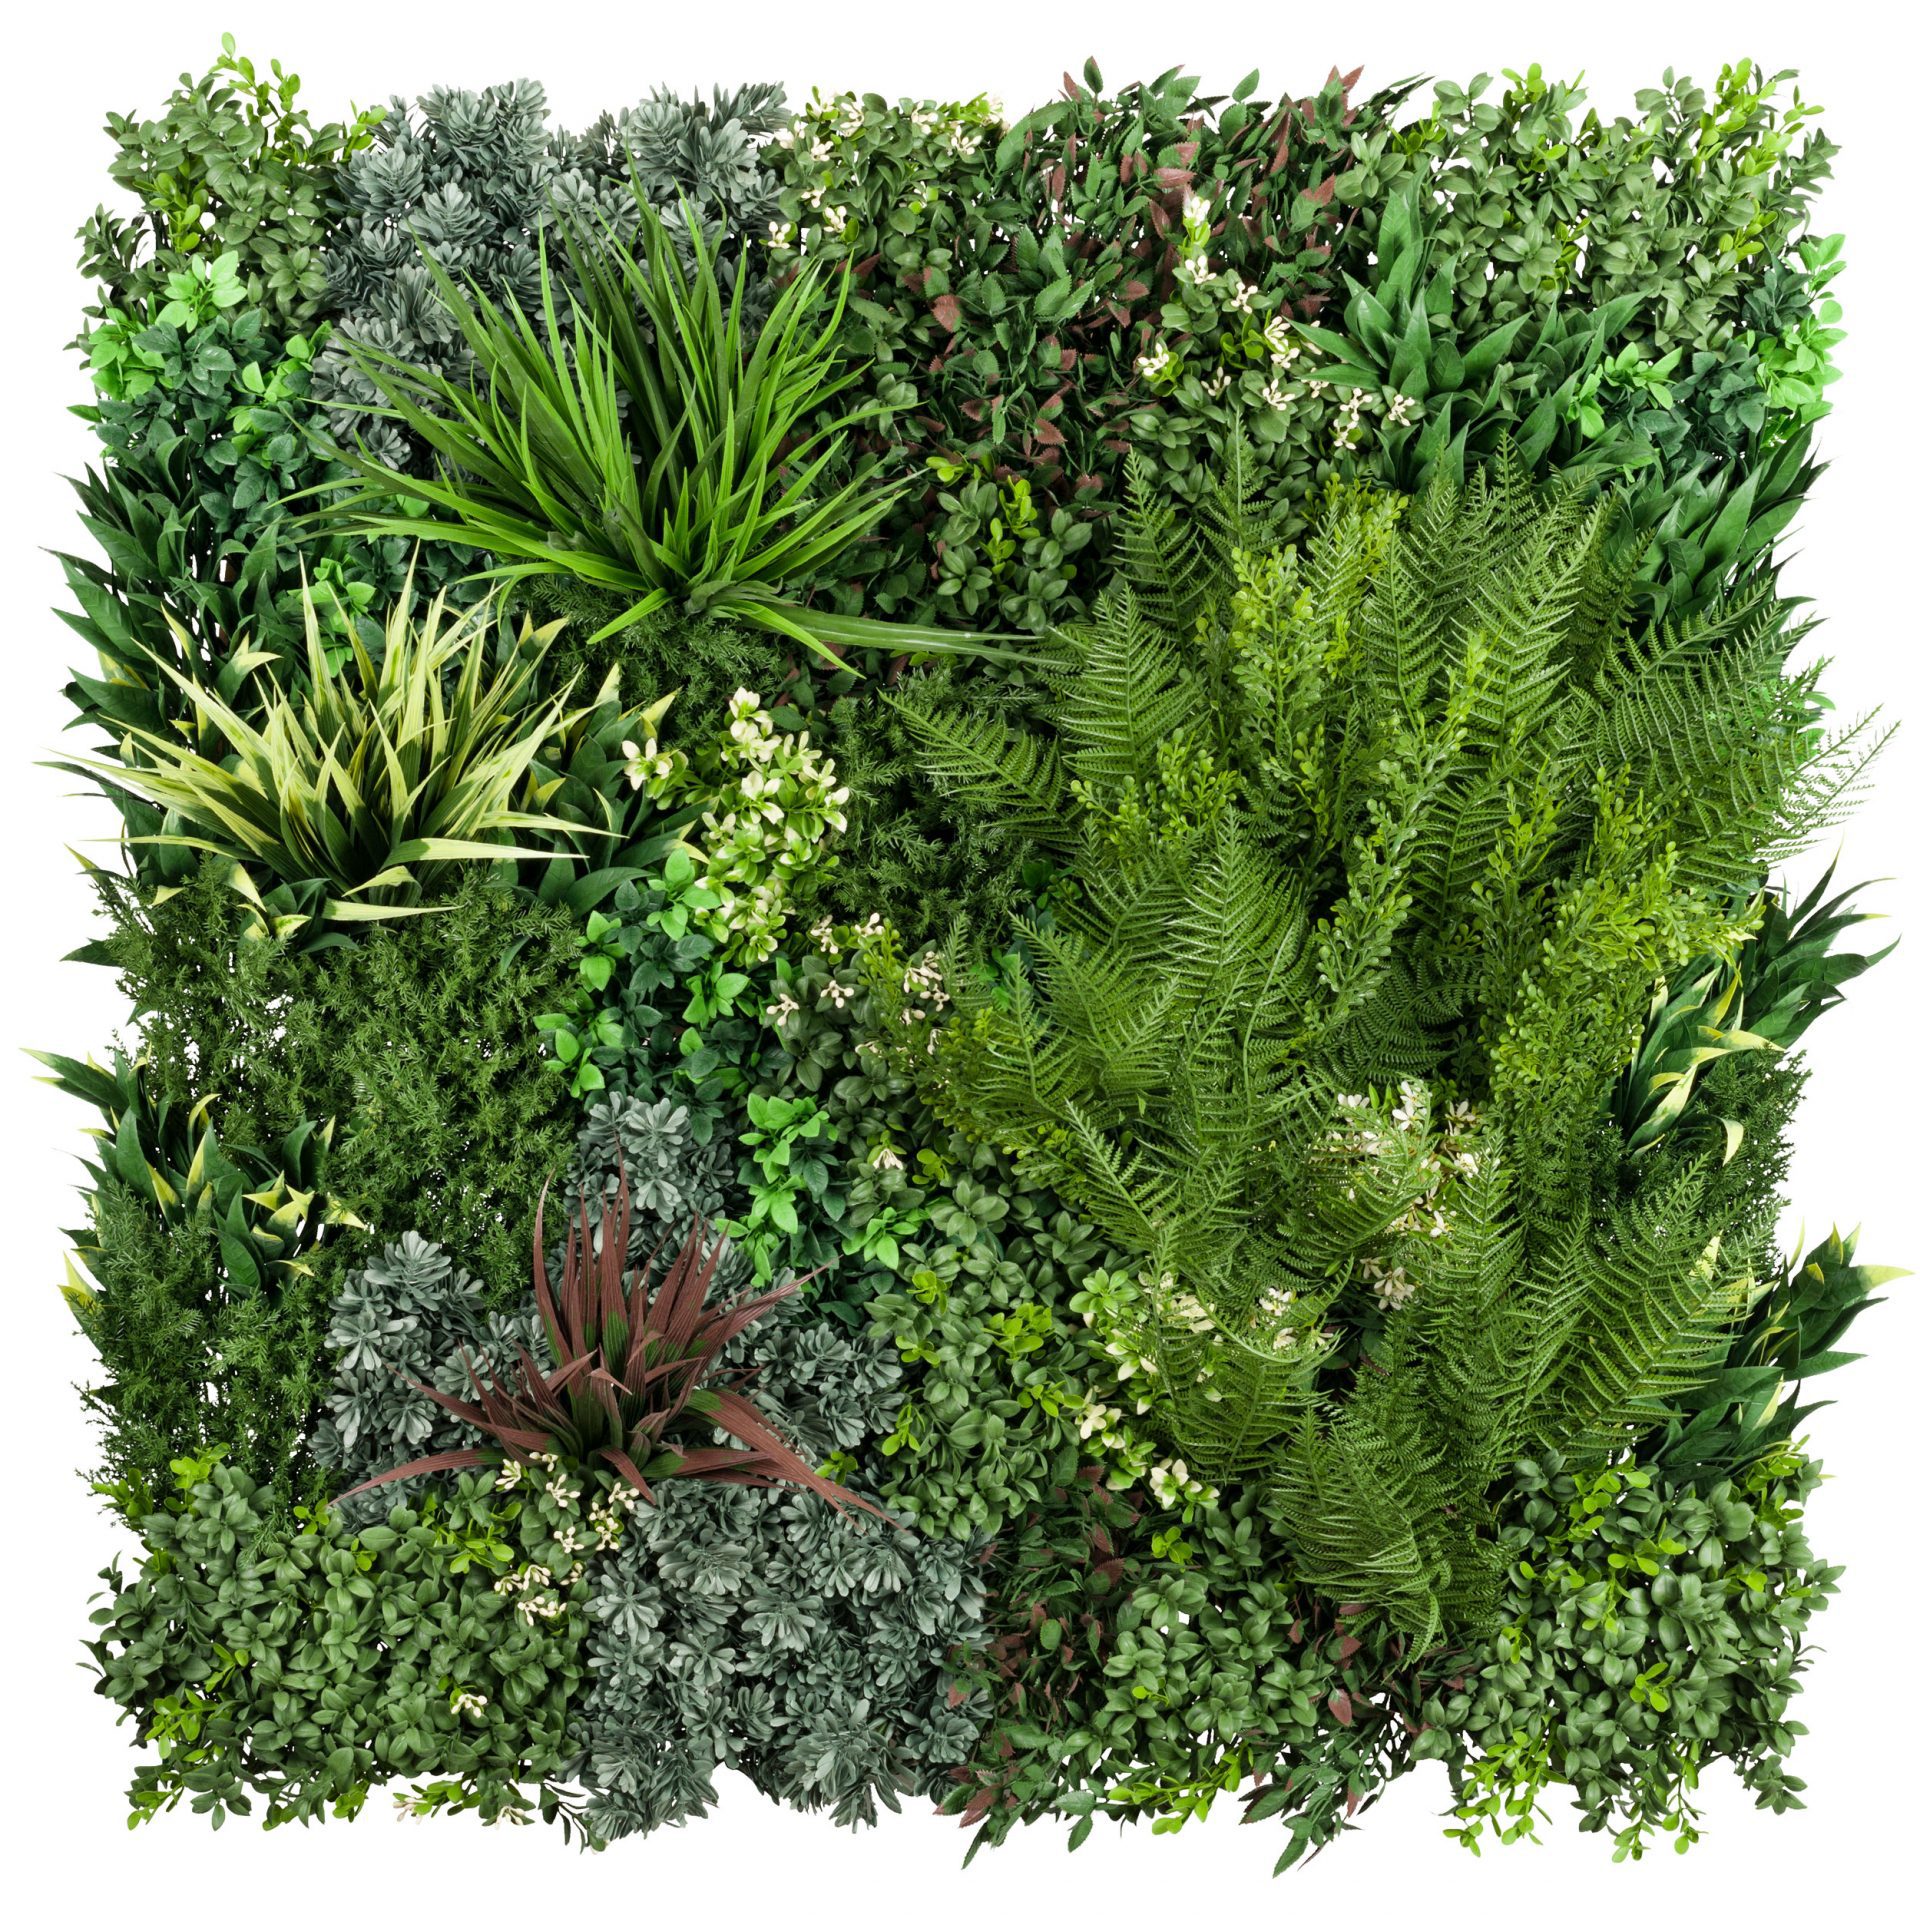 Vistafolia® Artificial Green Wall Panels